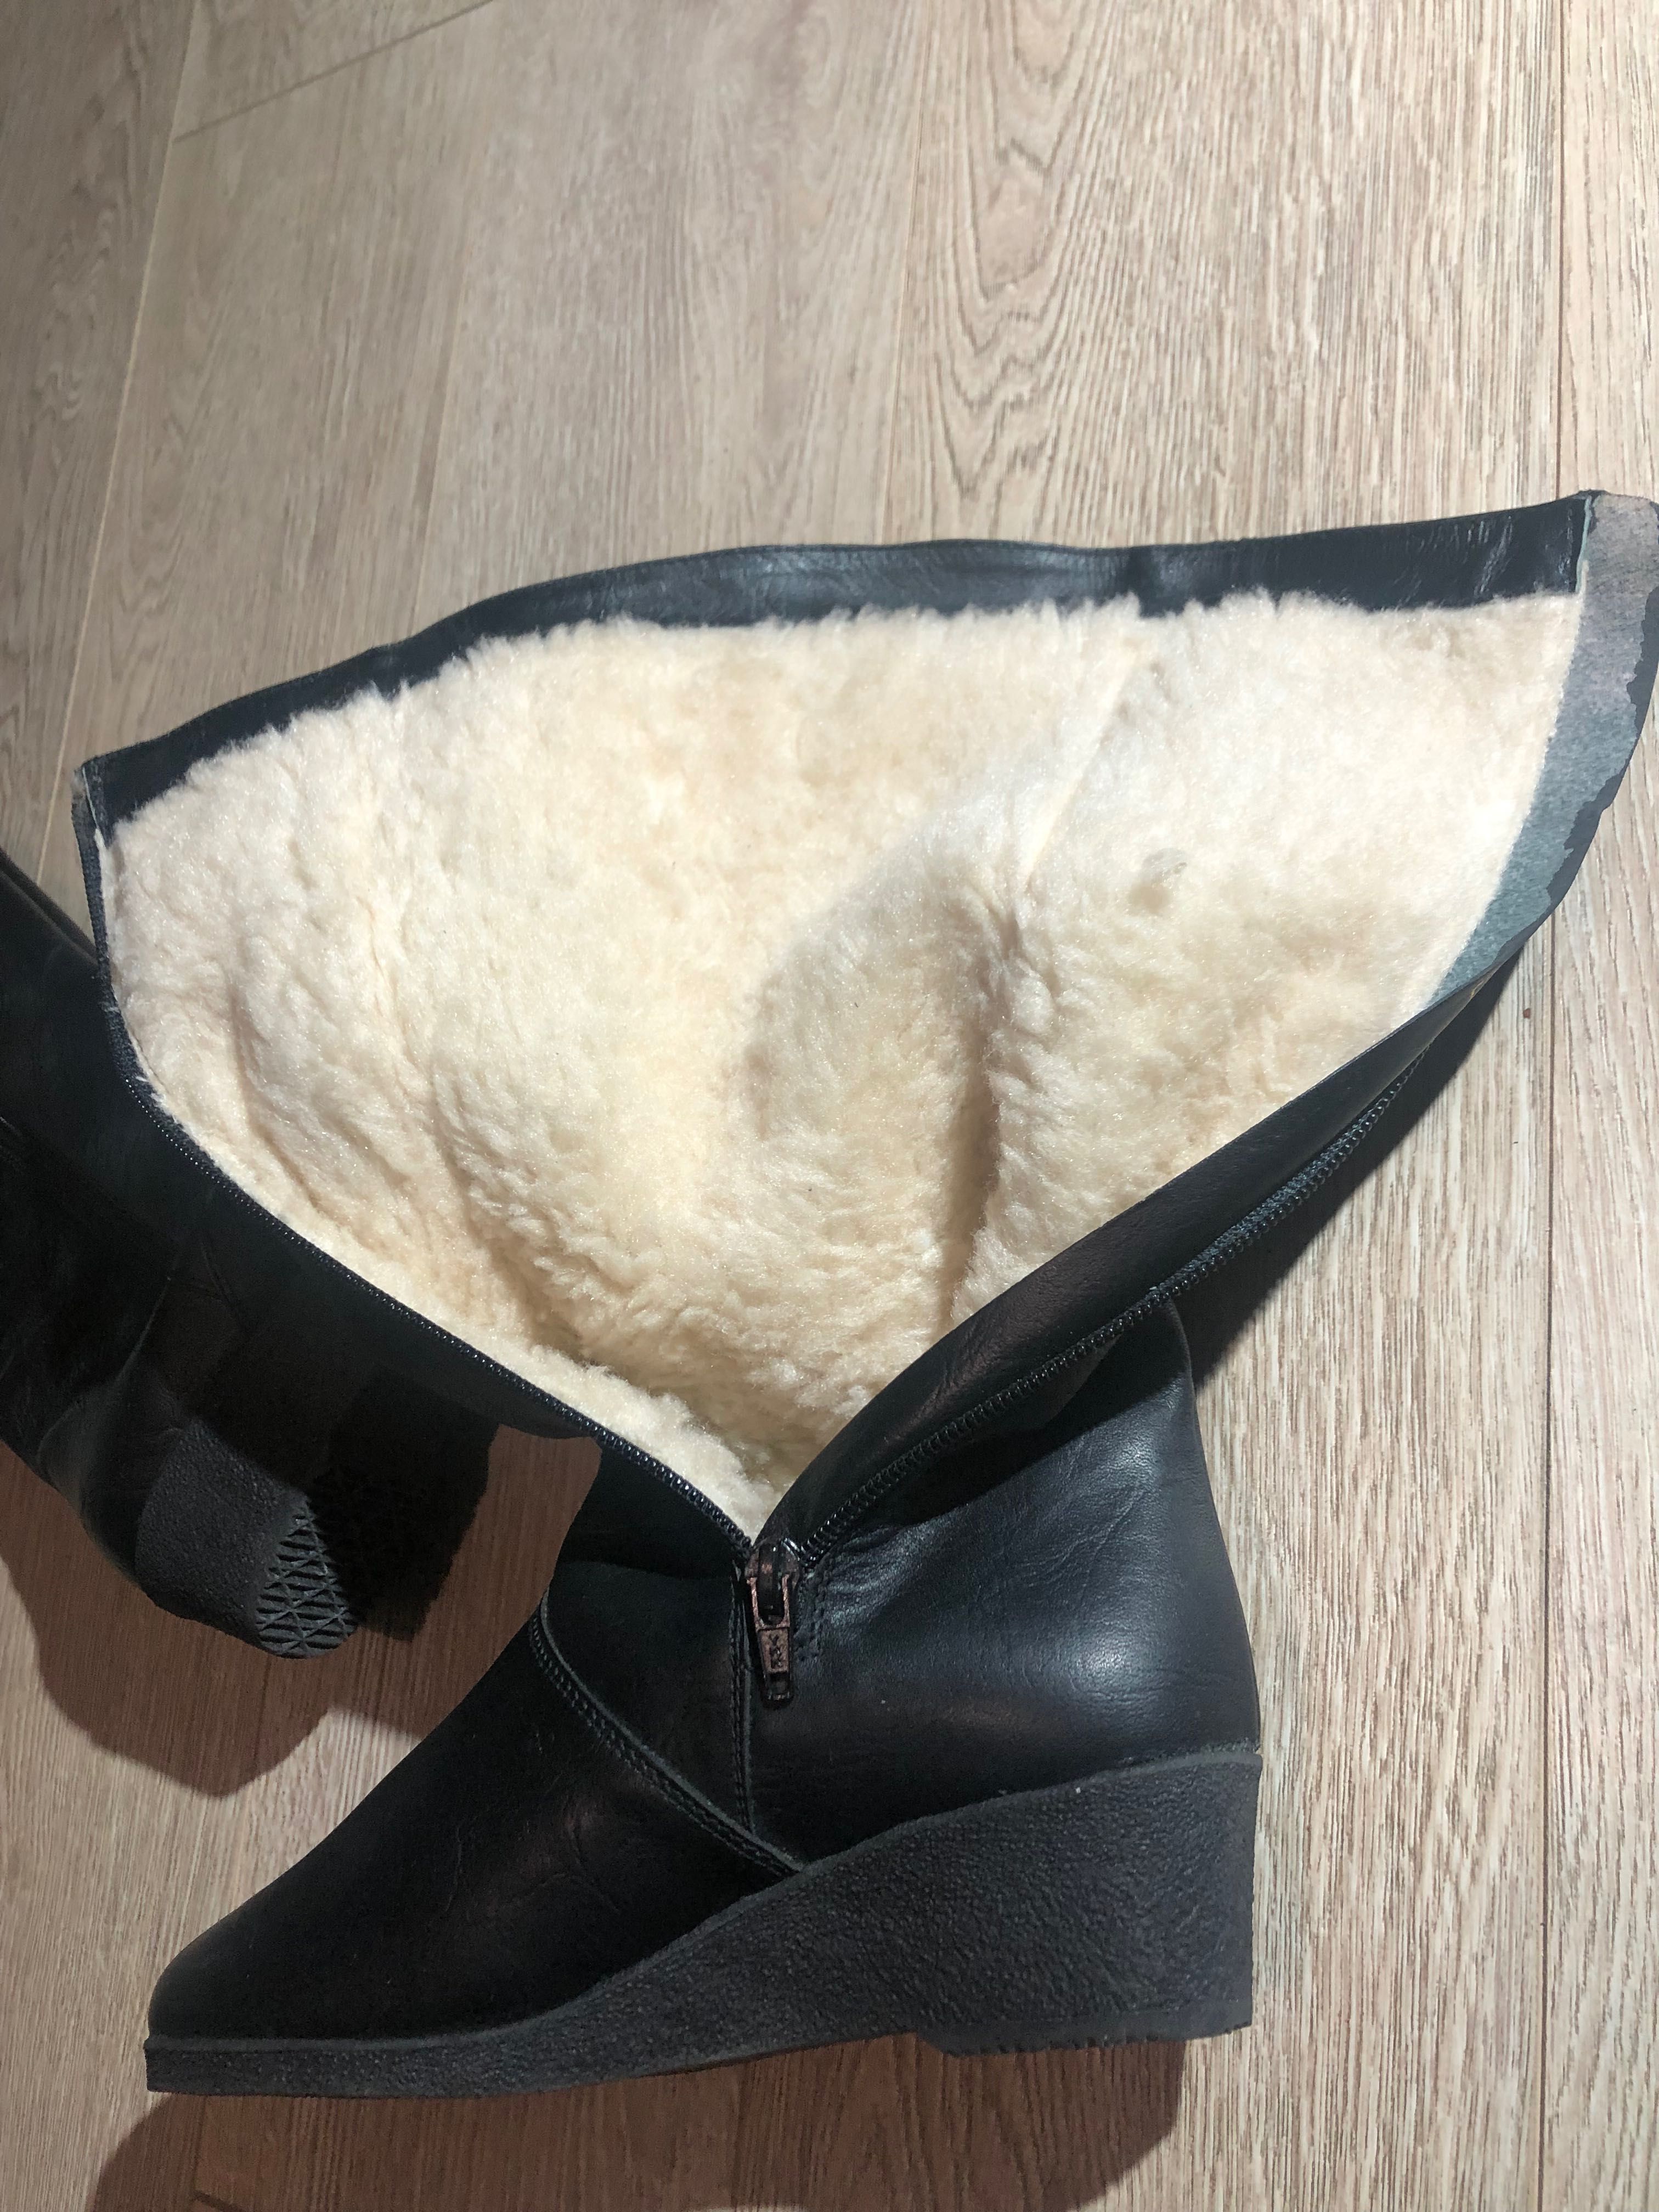 Чоботи (чобітки) жіночі шкіряні  зимові нові